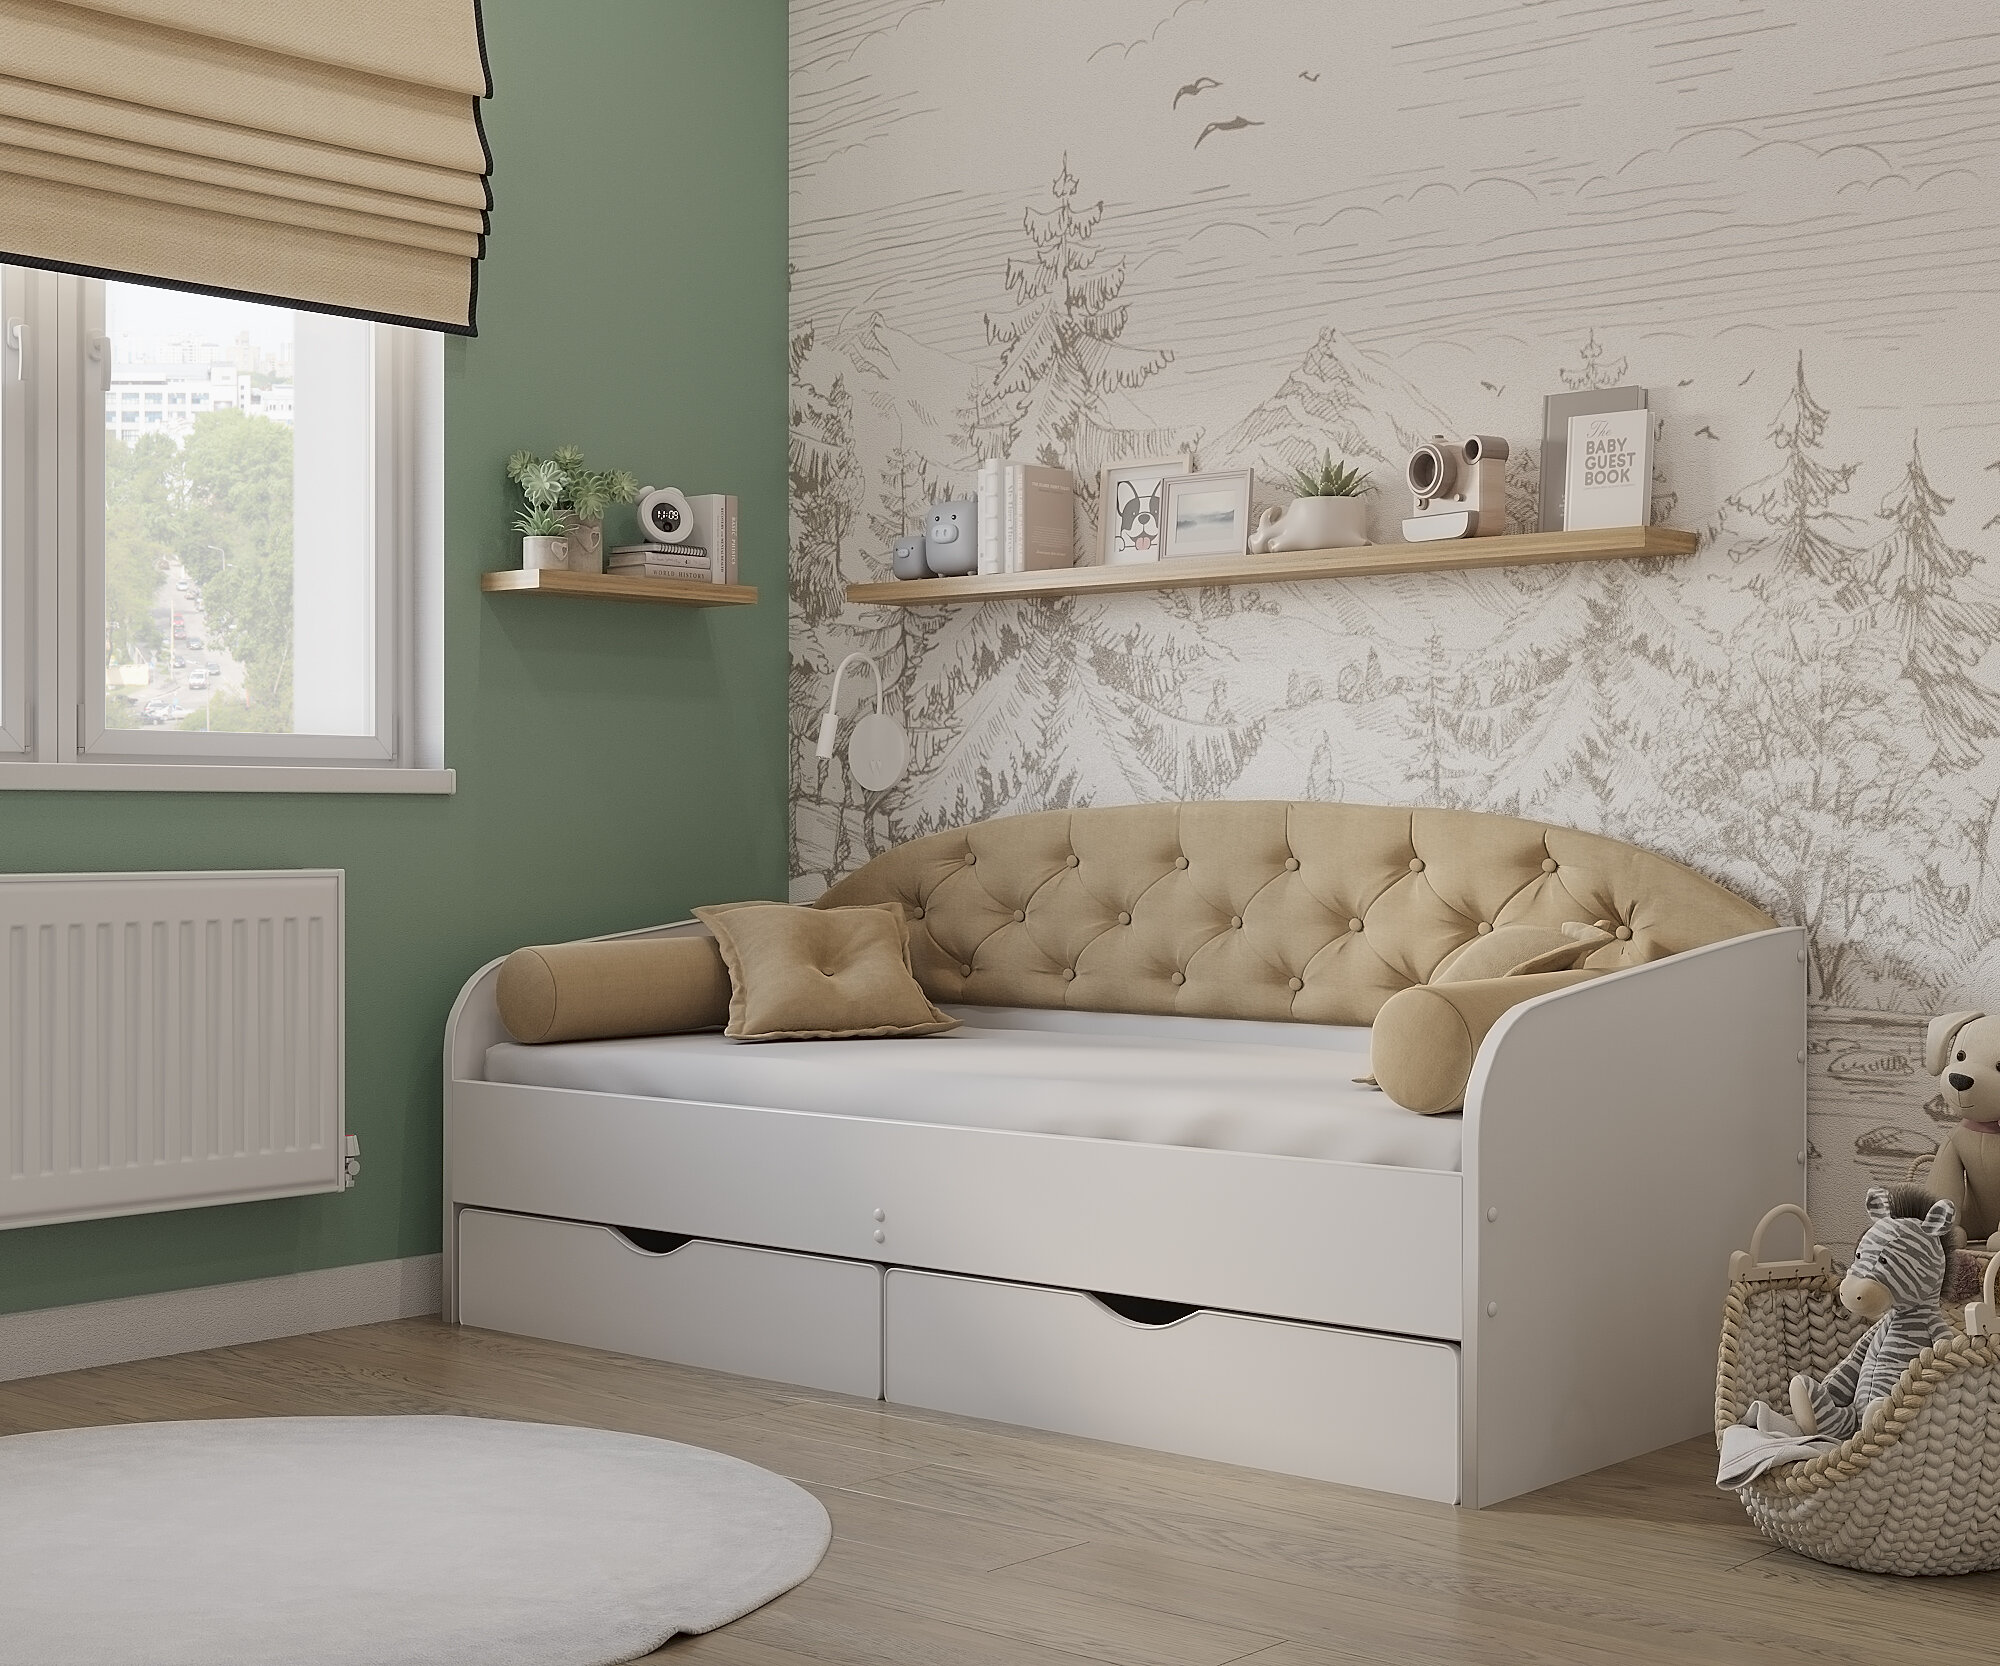 Matrix кровать с мягкой спинкой Sofa 9, 190x80 см., цвет бежевый